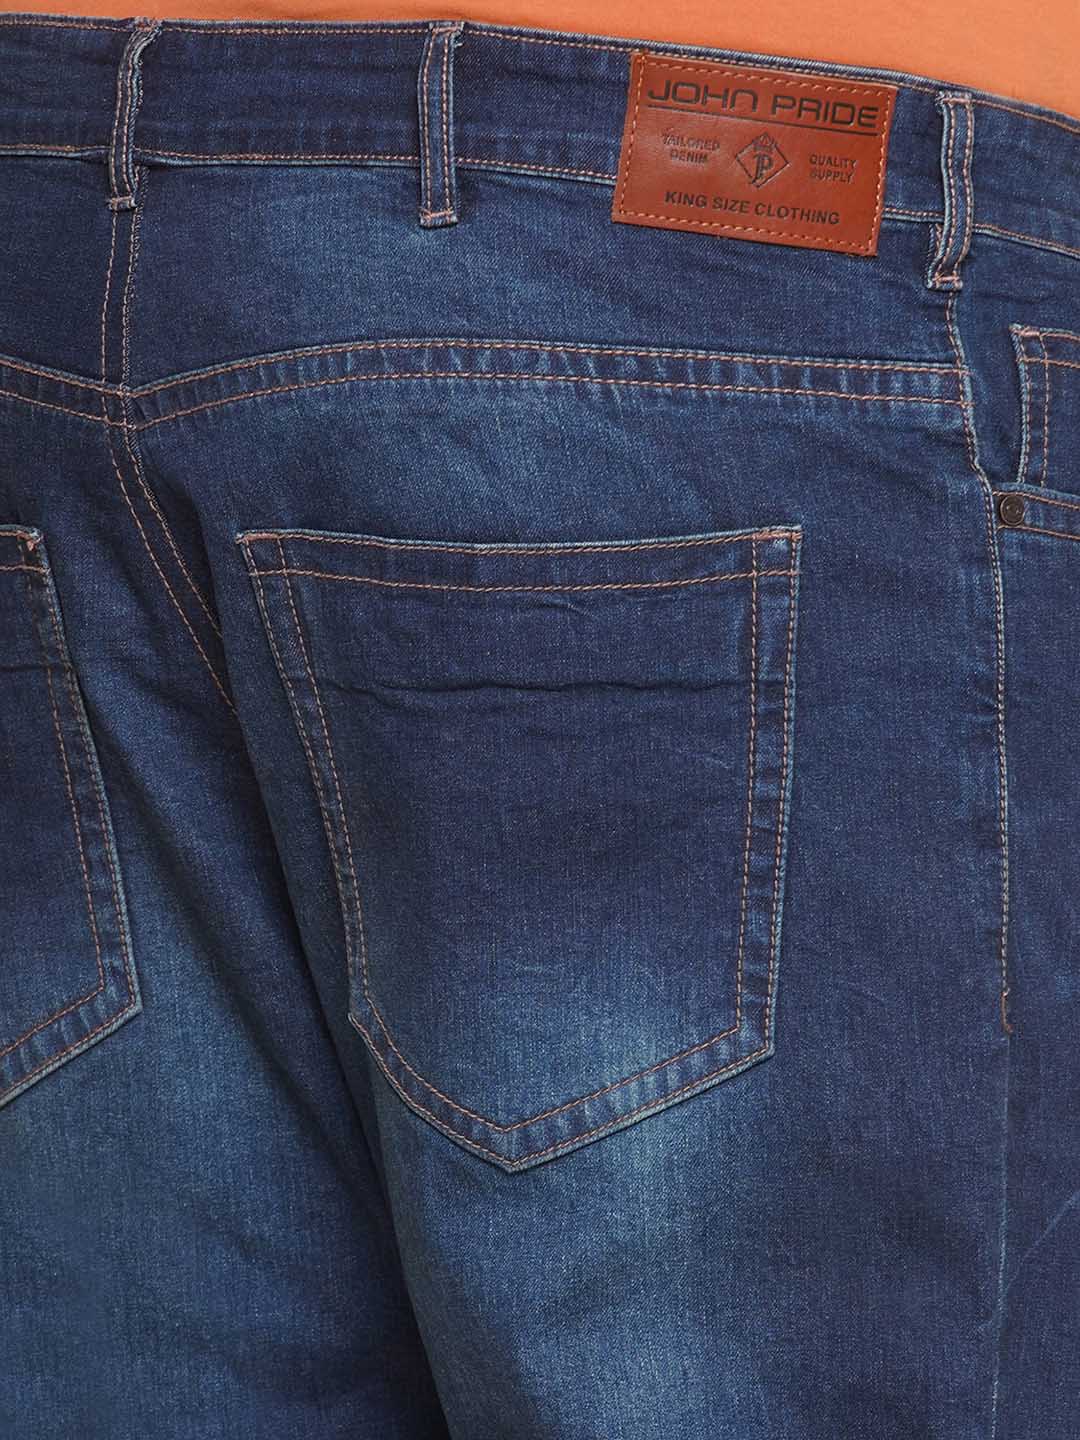 bottomwear/jeans/JPJ27032/jpj27032-2.jpg